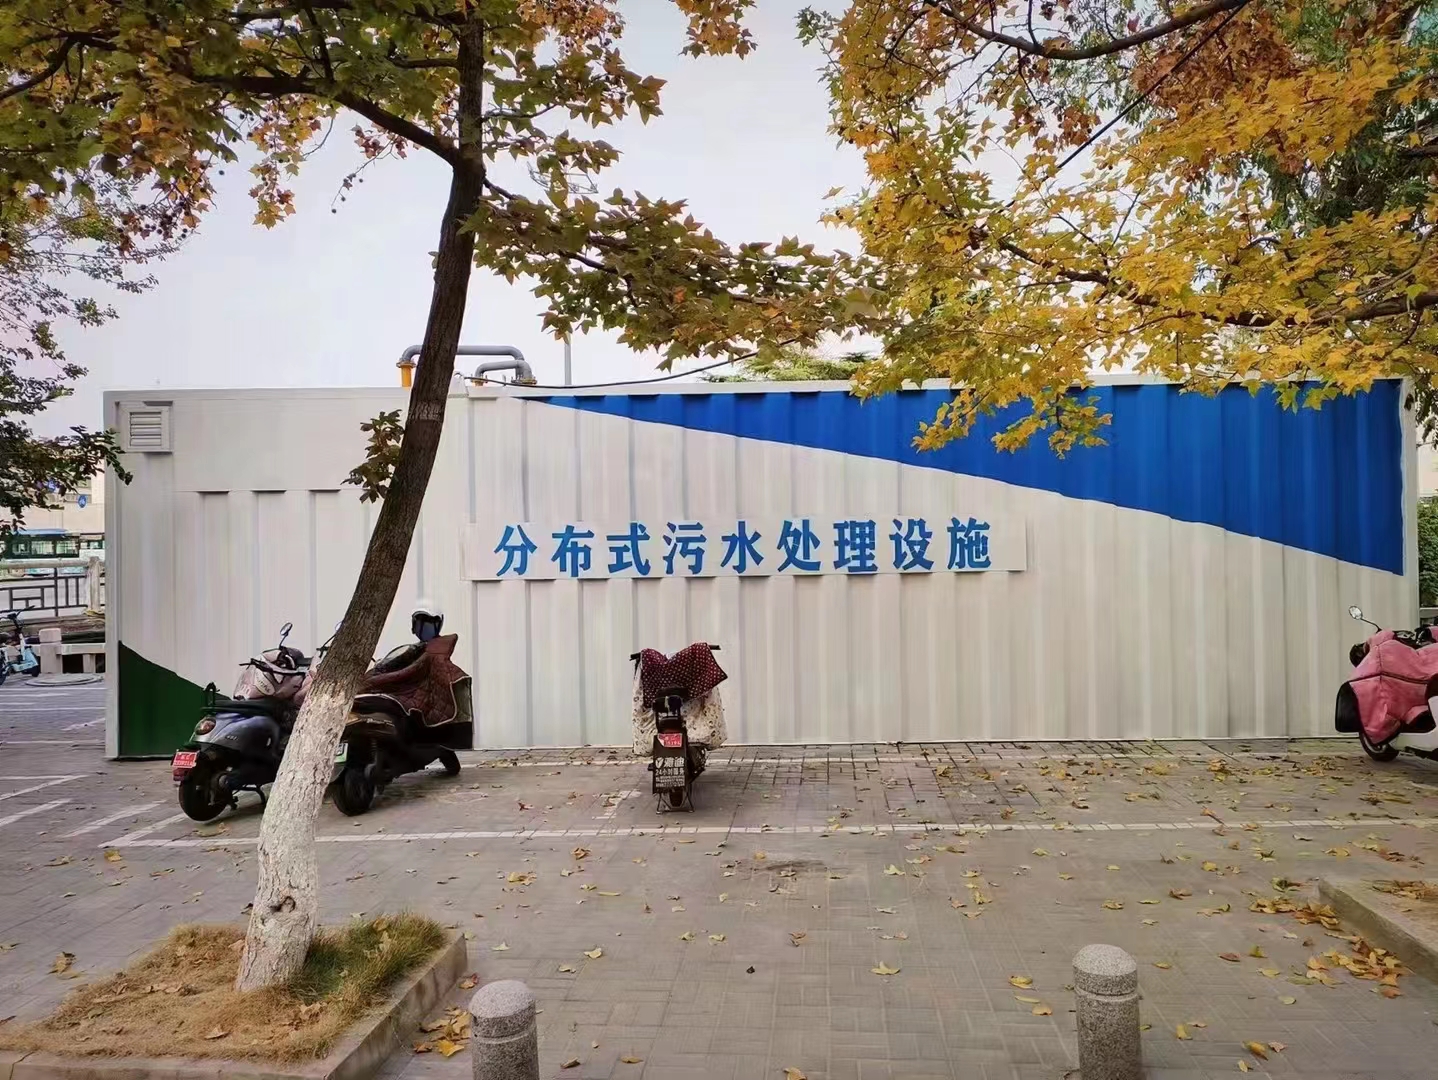 北京MBBR一体化污水处理设备